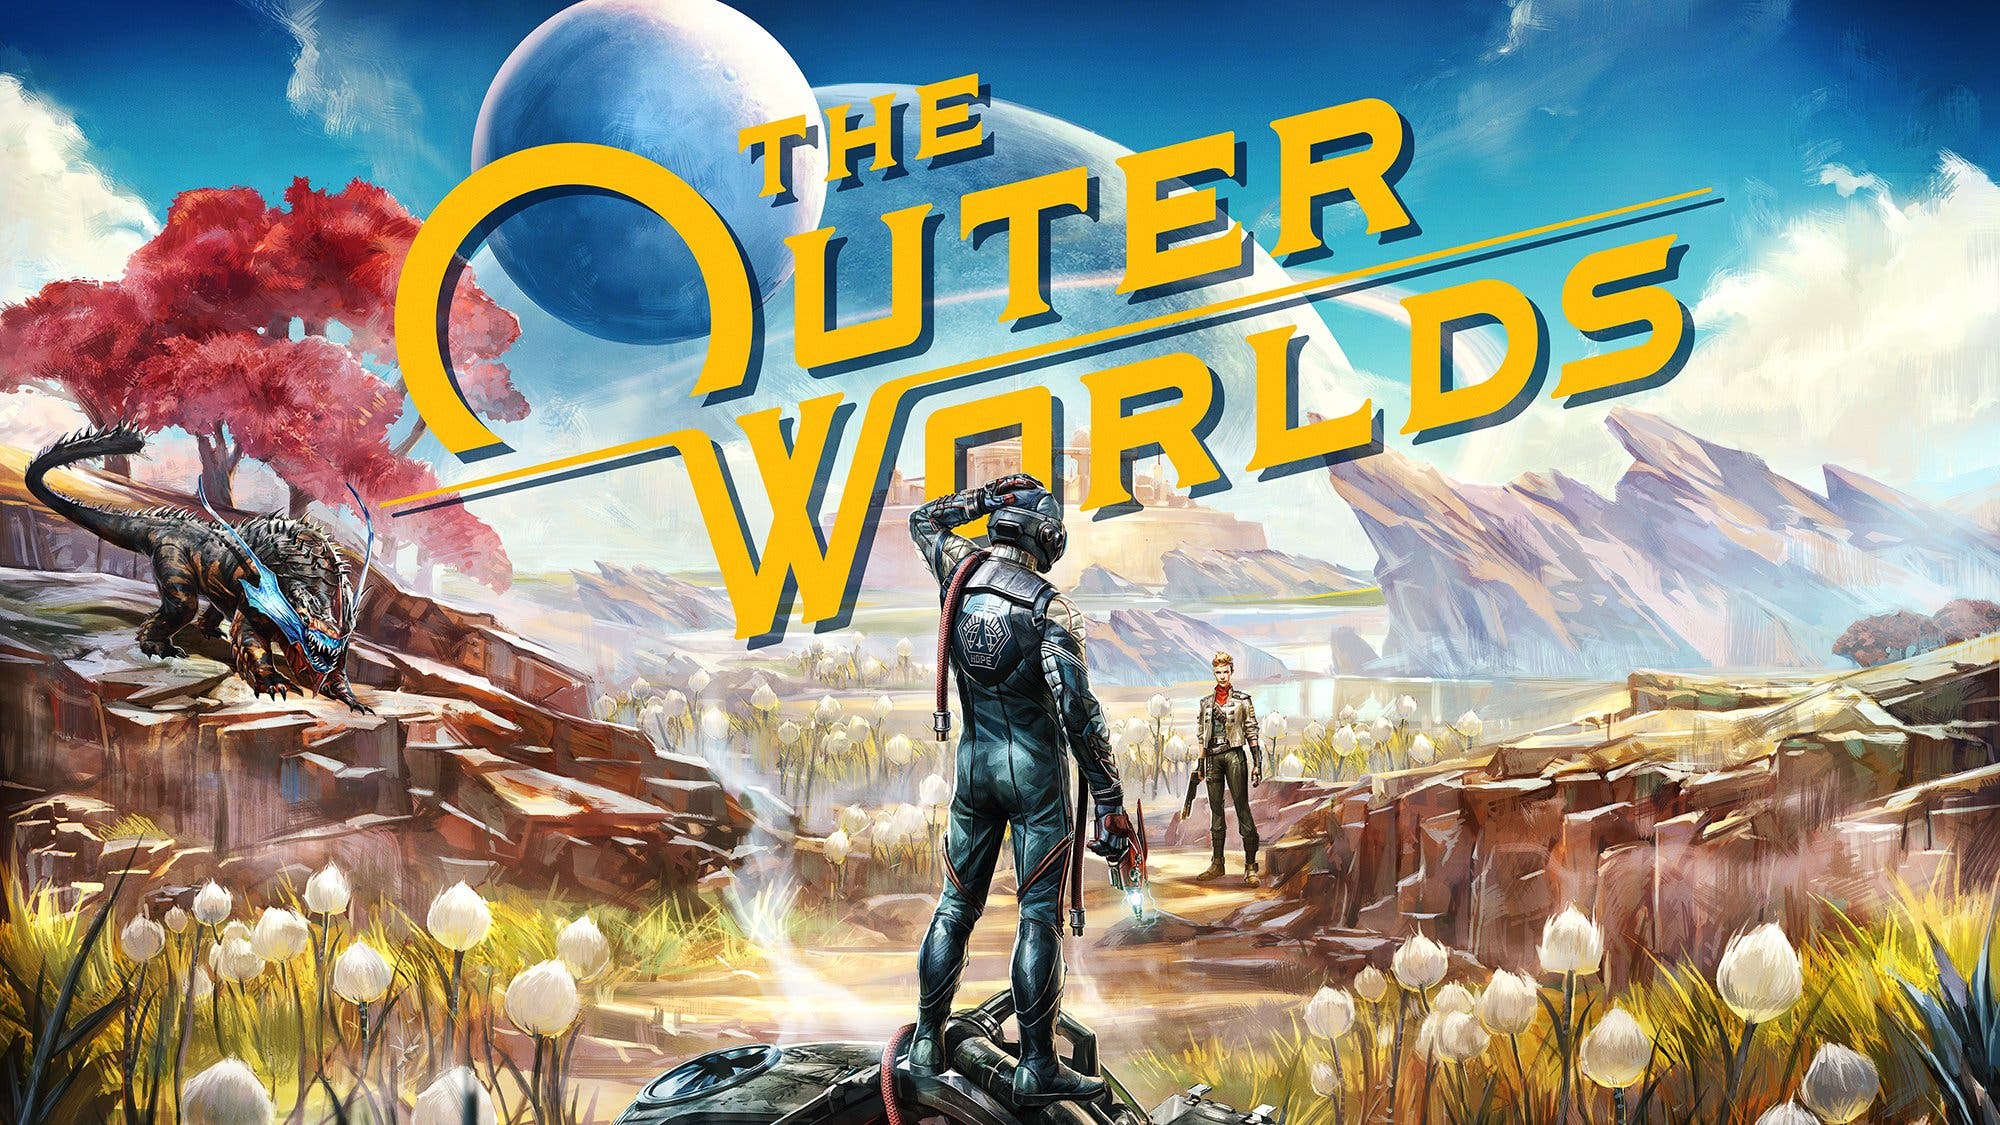 [Act.] Anunciado The Outer Worlds para Nintendo Switch